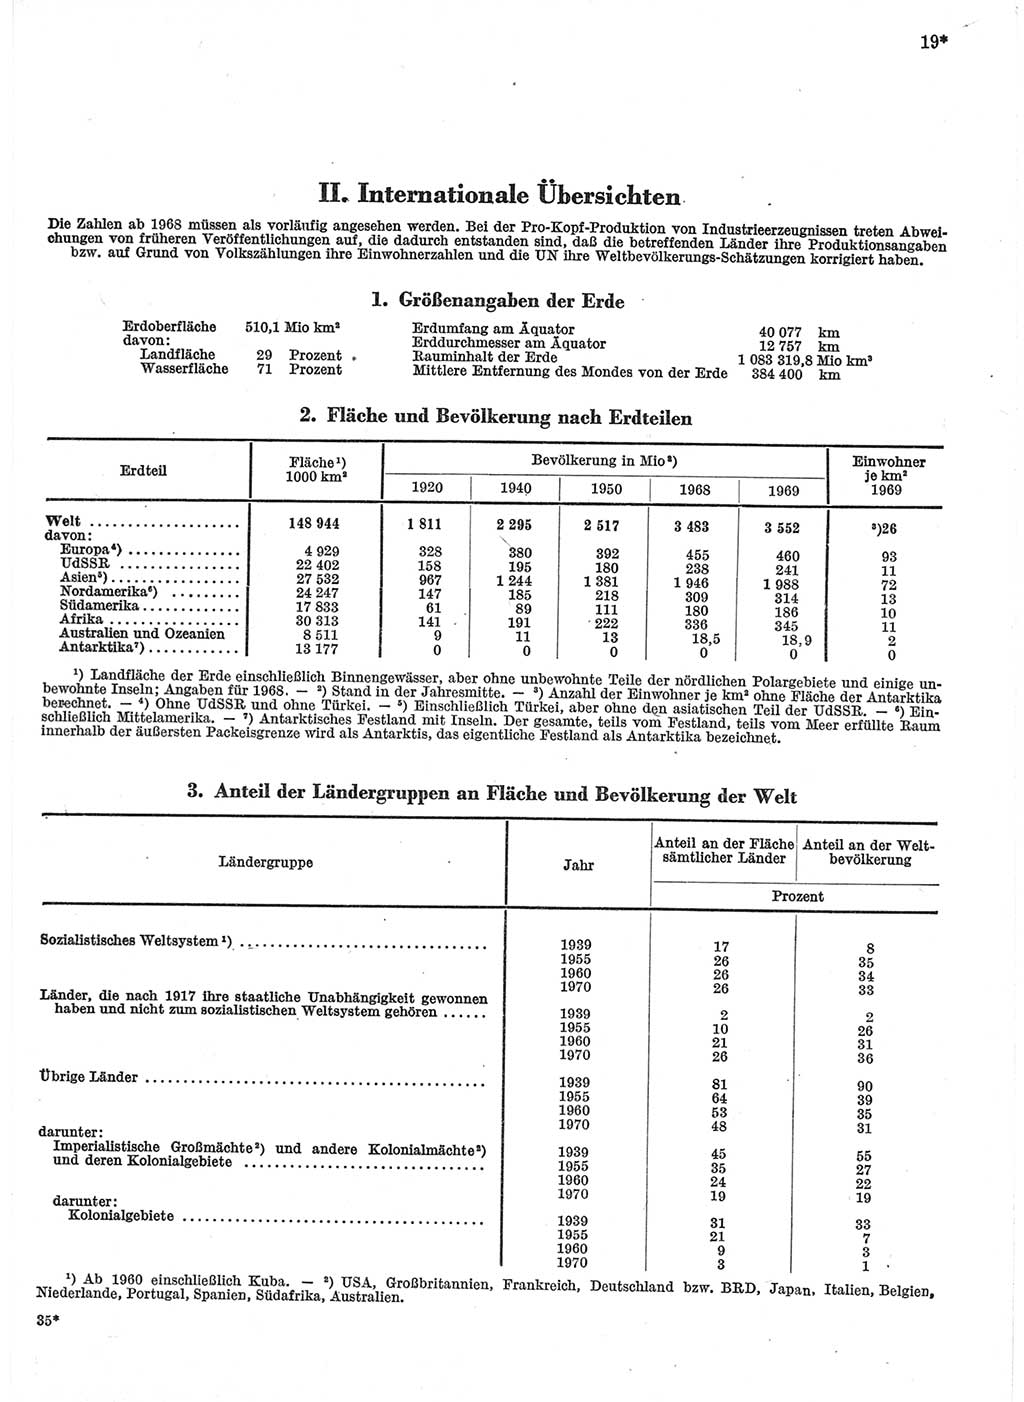 Statistisches Jahrbuch der Deutschen Demokratischen Republik (DDR) 1971, Seite 19 (Stat. Jb. DDR 1971, S. 19)